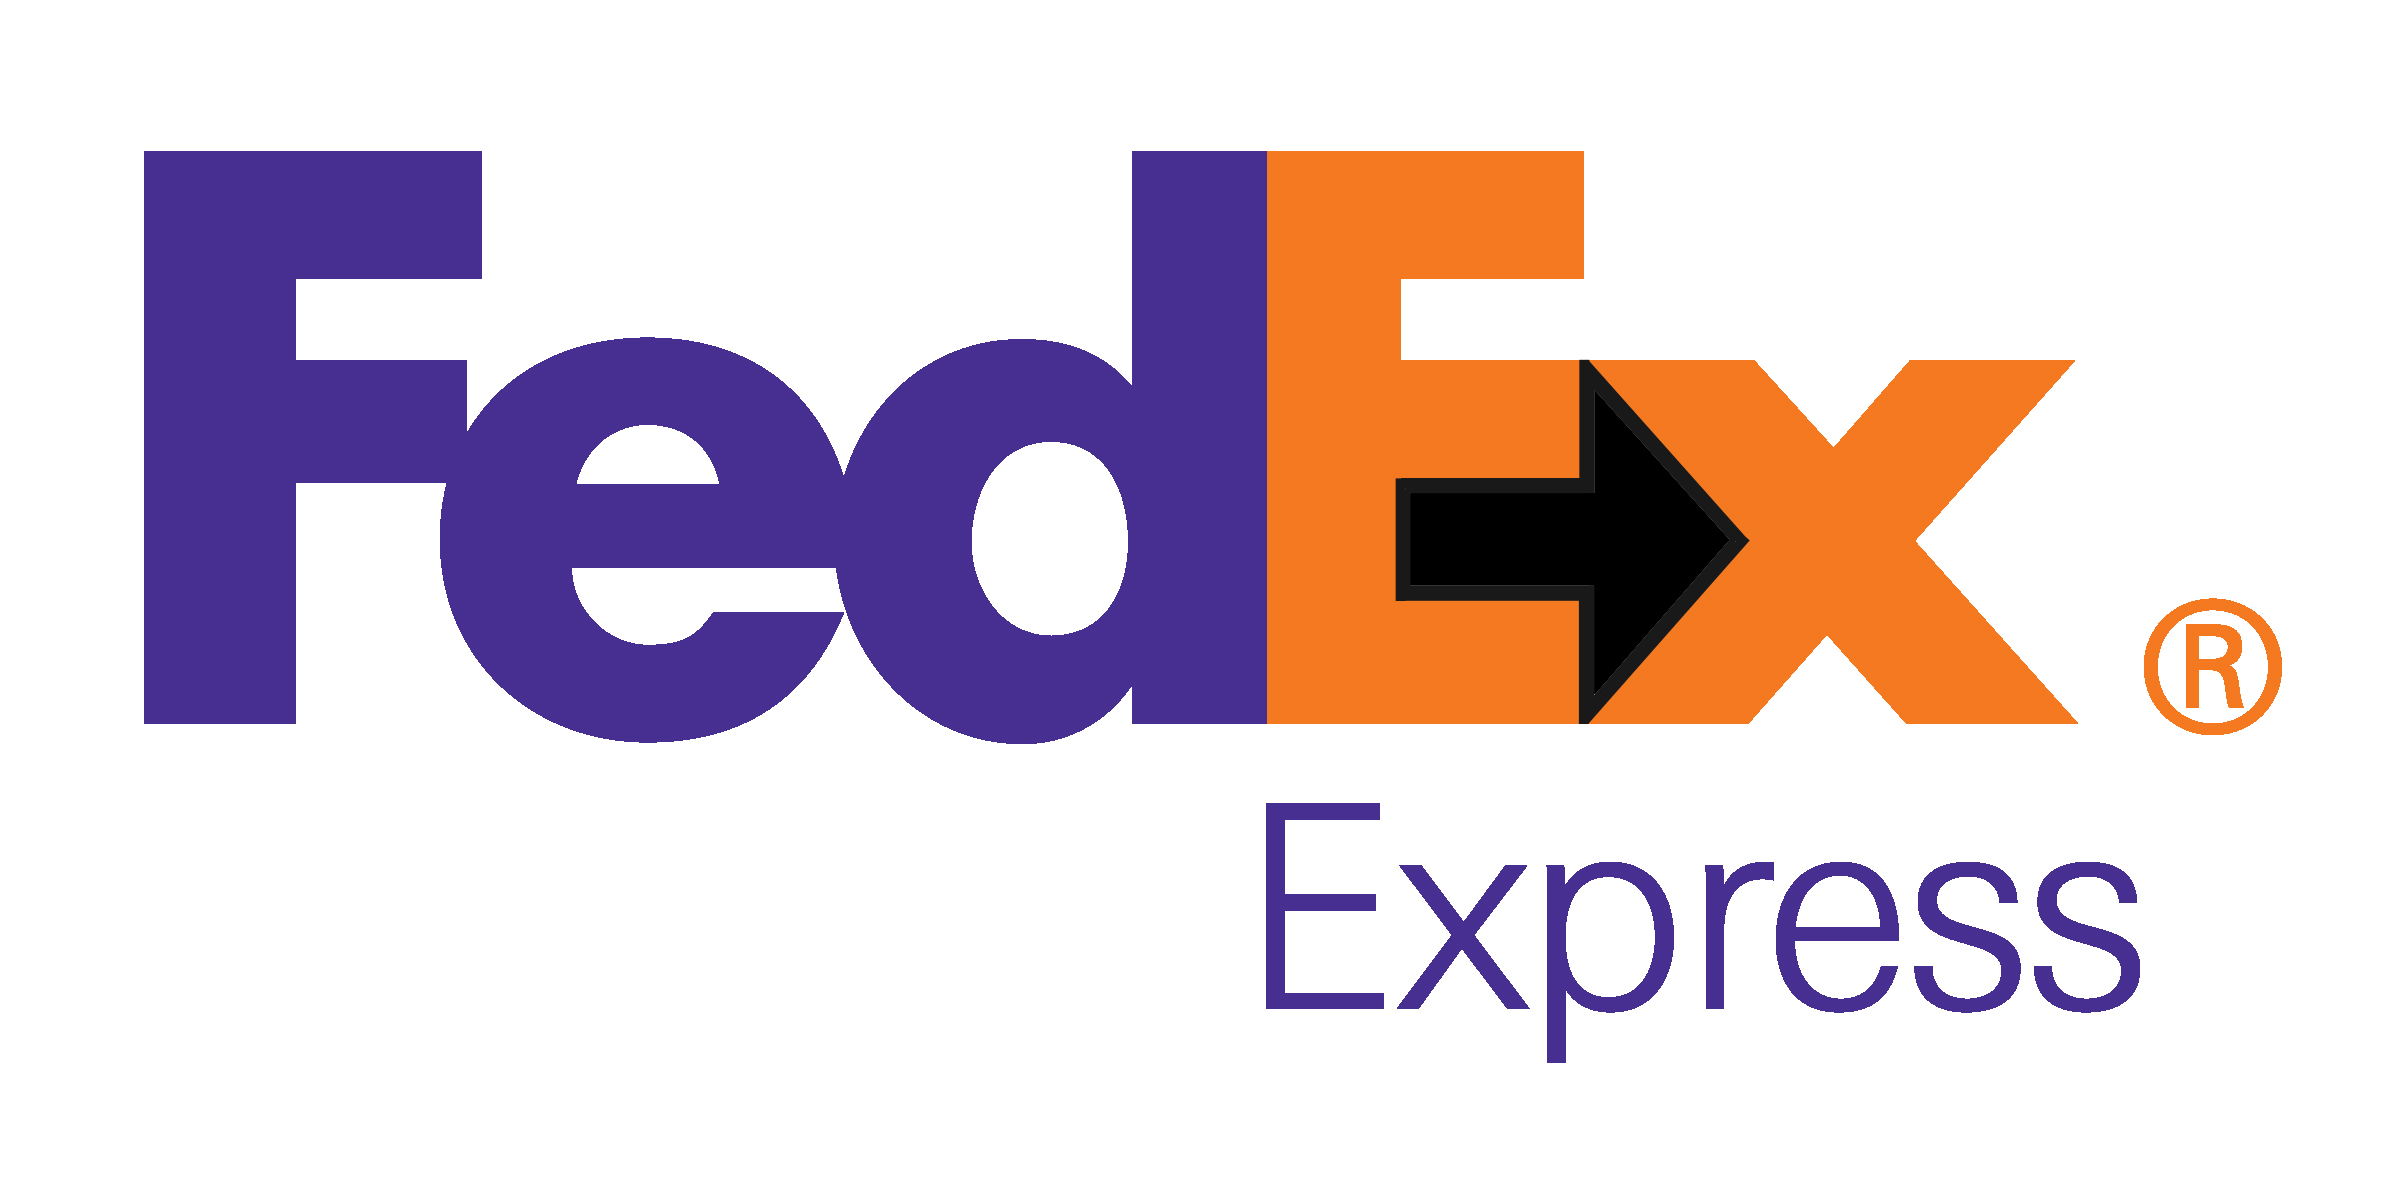 A simple vista el logo de Federal Express pareciera ser solamente al acrónimo de sus palabras FedEx, pero oculta una forma entre dos de sus letras.